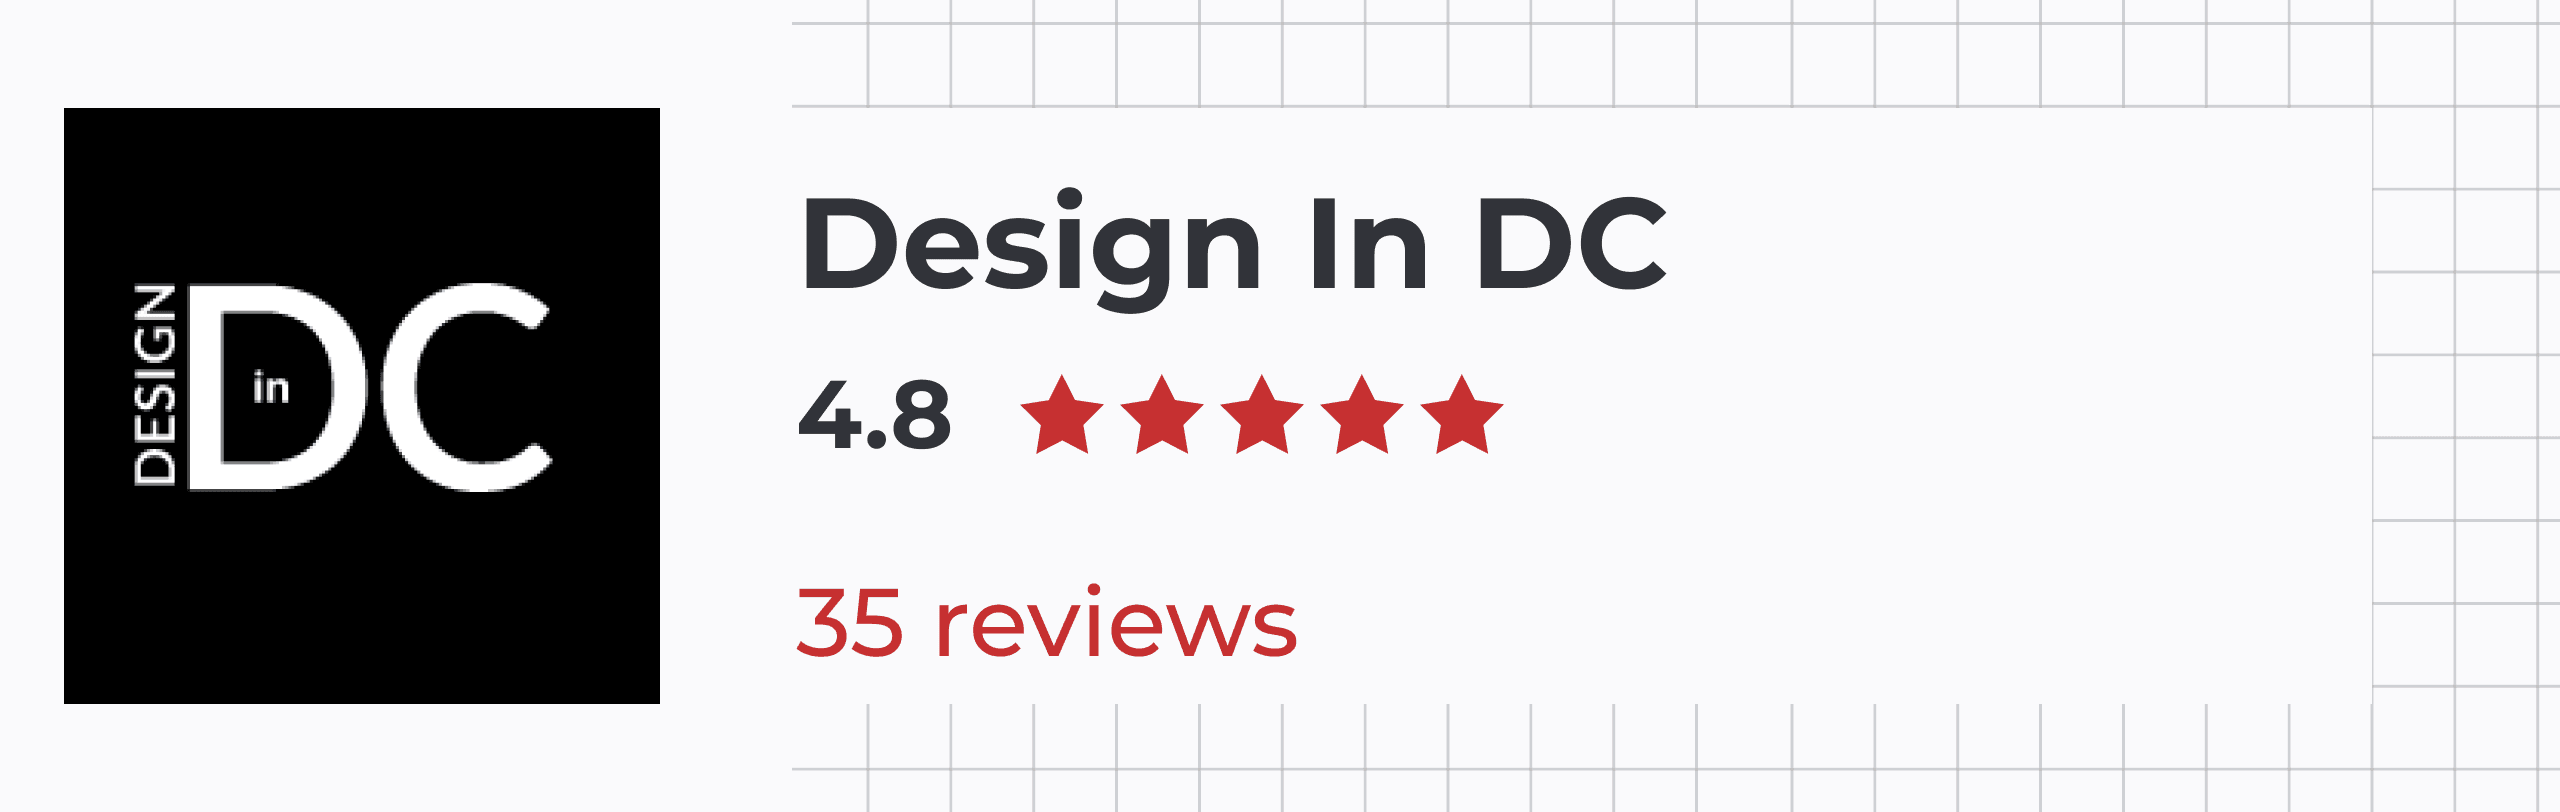 Design in DC